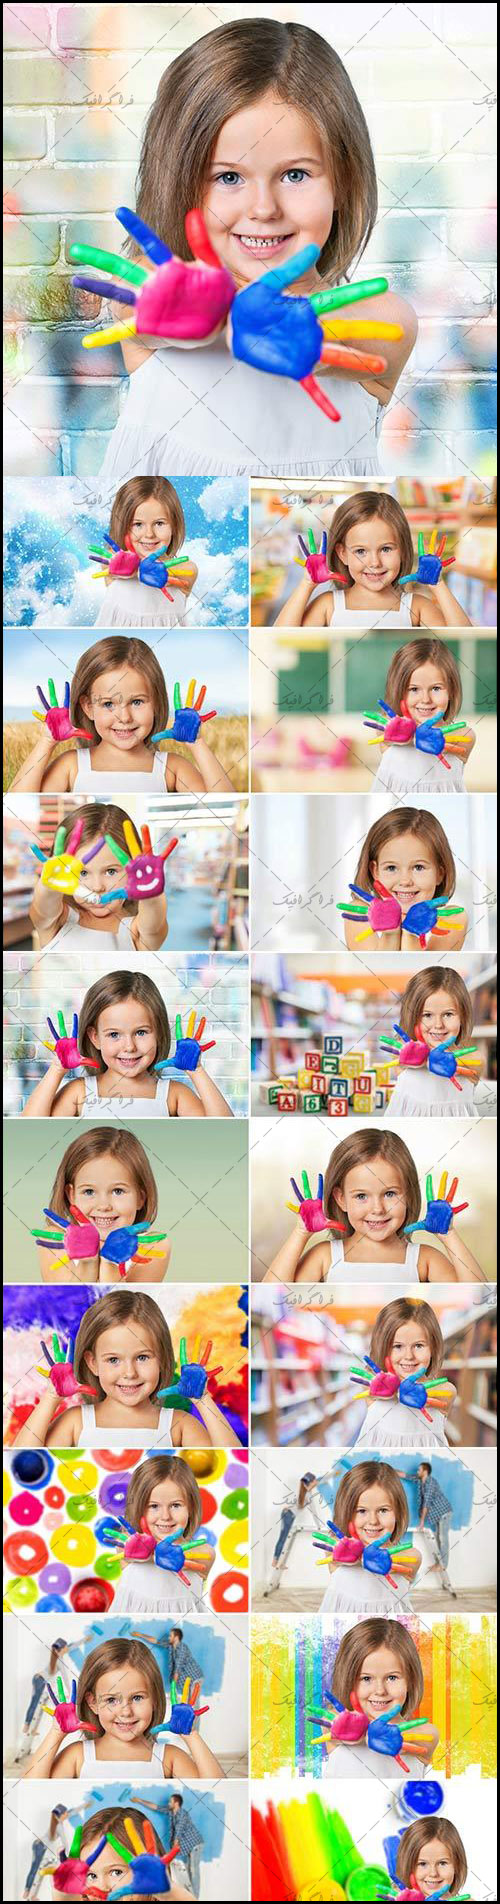 دانلود تصاویر استوک دختر بچه شاد با کف دست رنگی